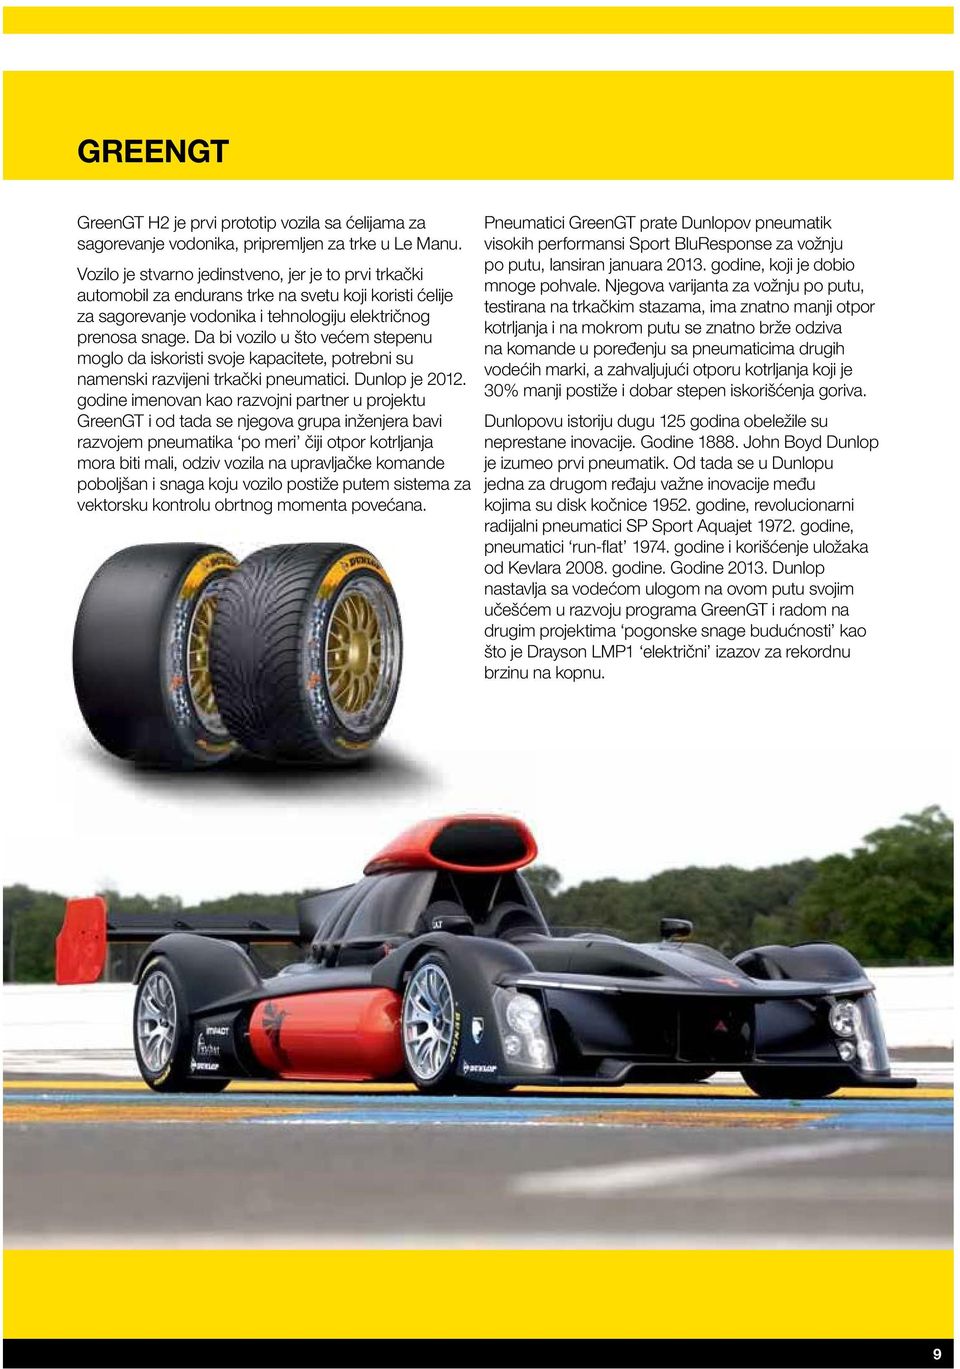 Da bi vozilo u što većem stepenu moglo da iskoristi svoje kapacitete, potrebni su namenski razvijeni trkački pneumatici. Dunlop je 2012.